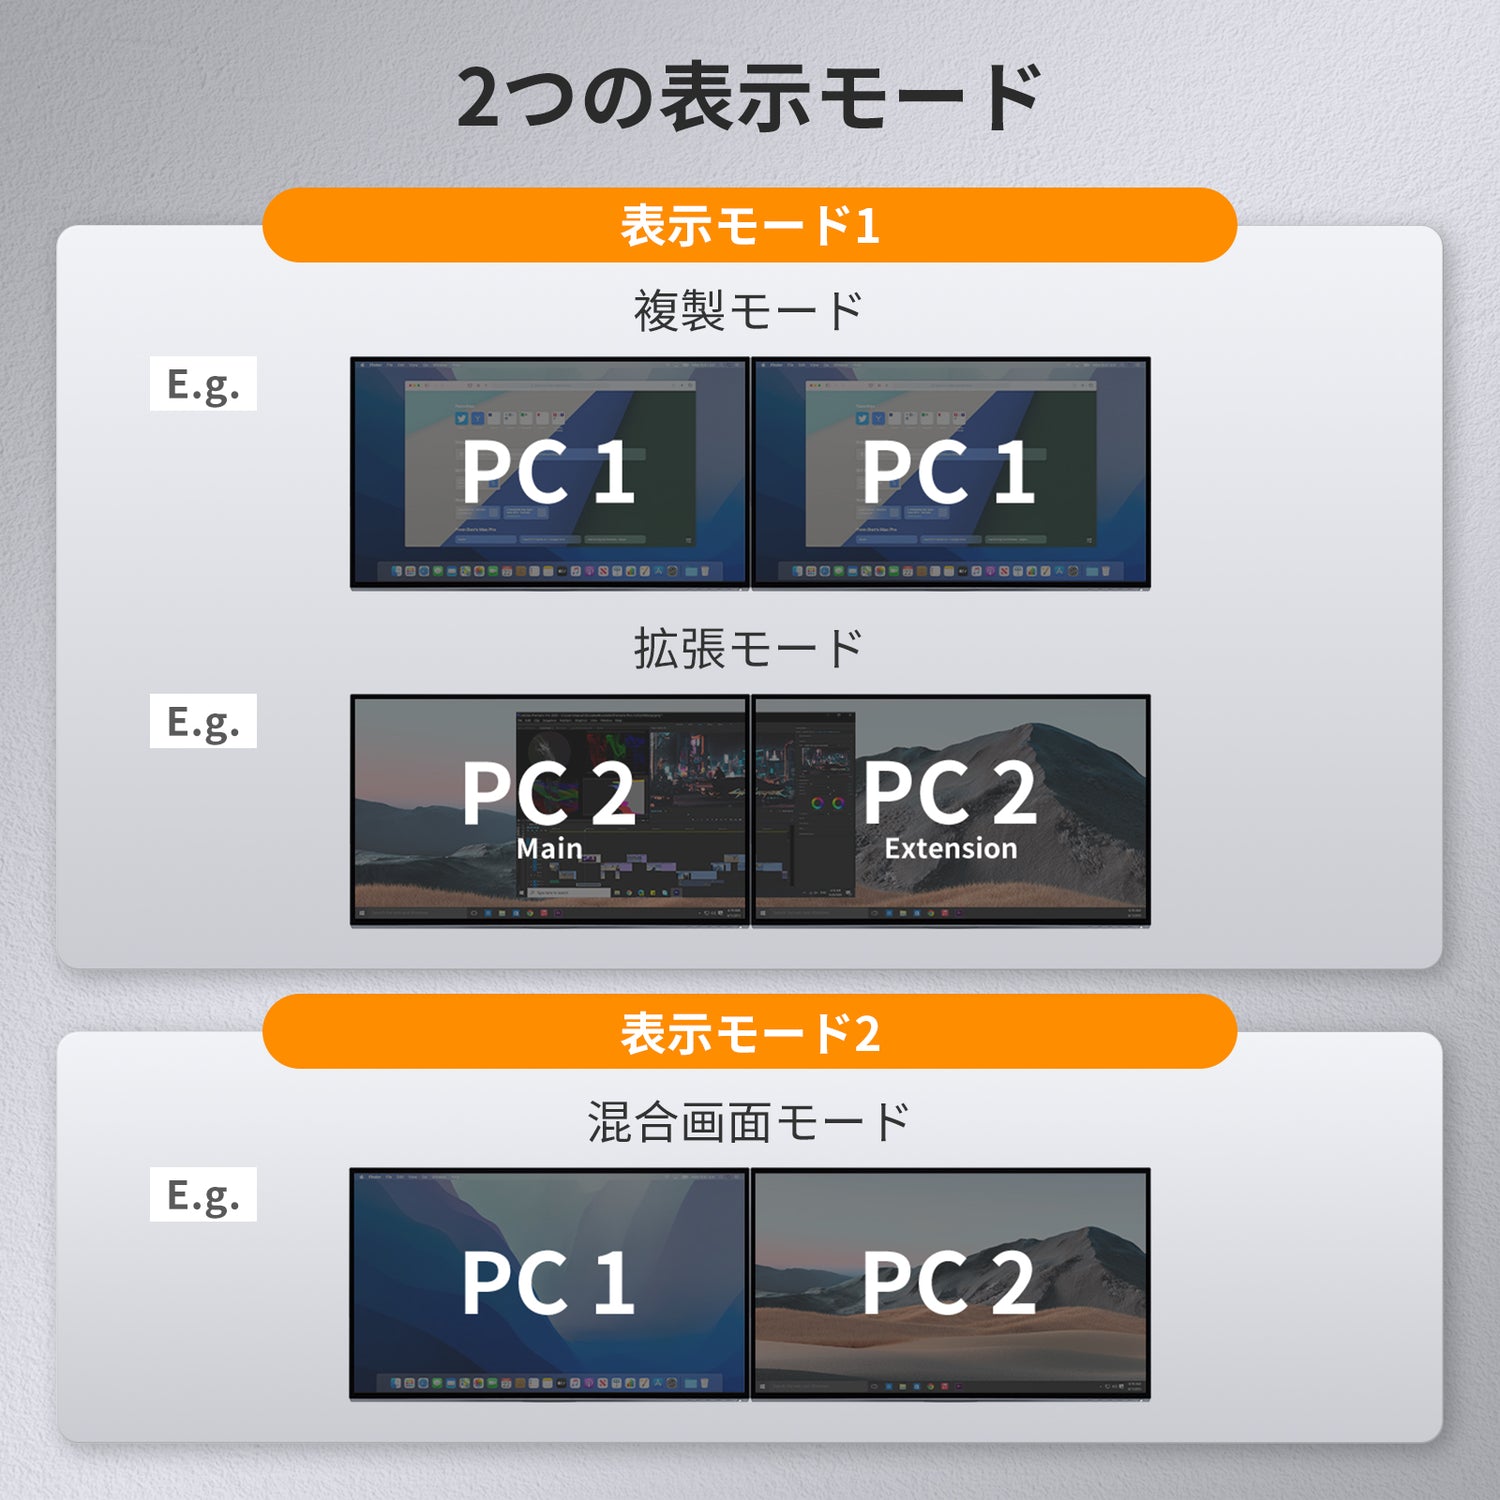 2 ポート デュアルモニター KVM スイッチ HDMI+DP 4K60Hz USB3.0 EDID付き | 2PC&amp;2モニター